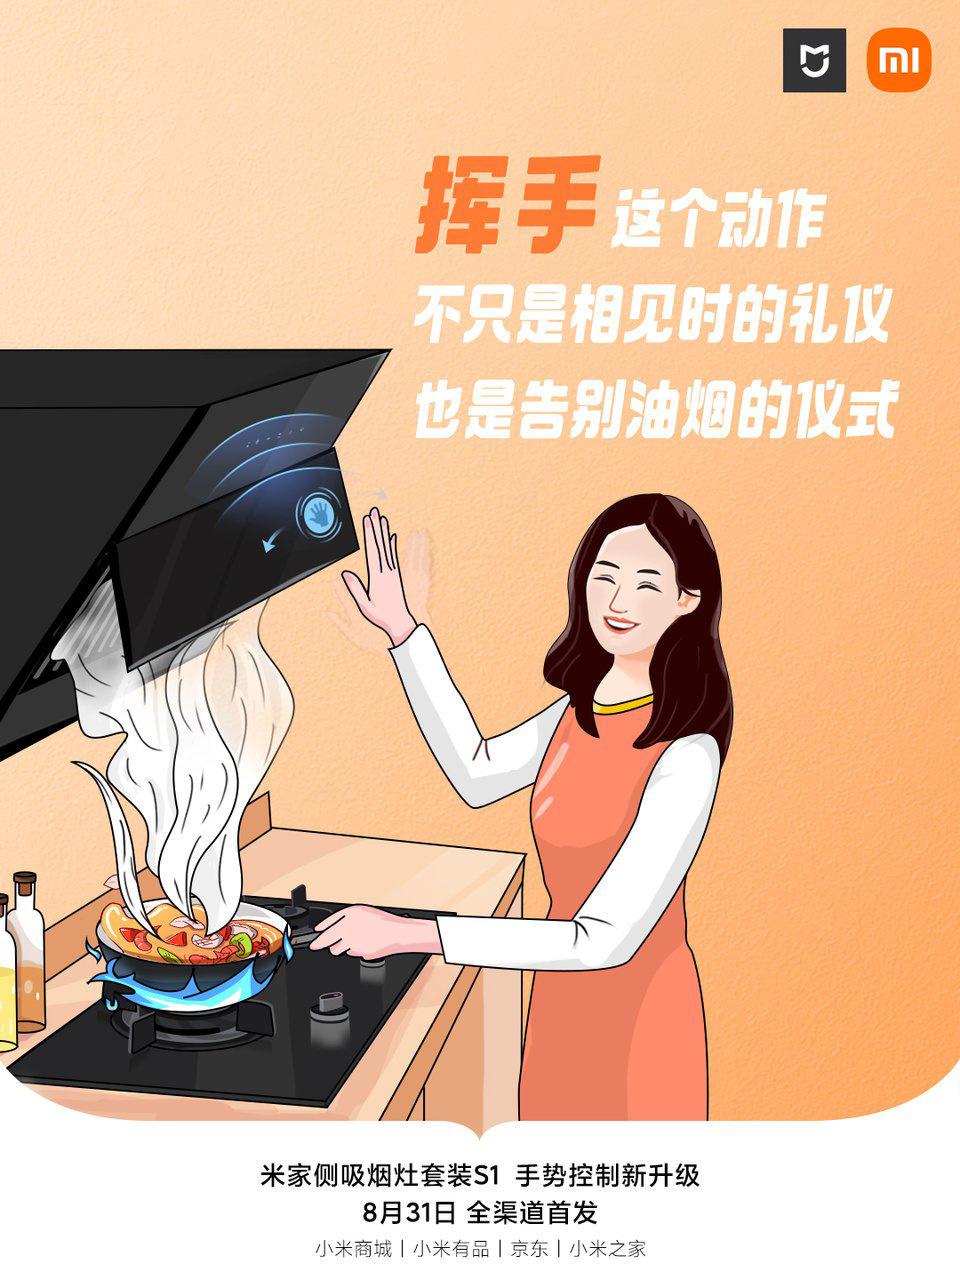 Xiaomi launches smart MIJIA S1 air purifier